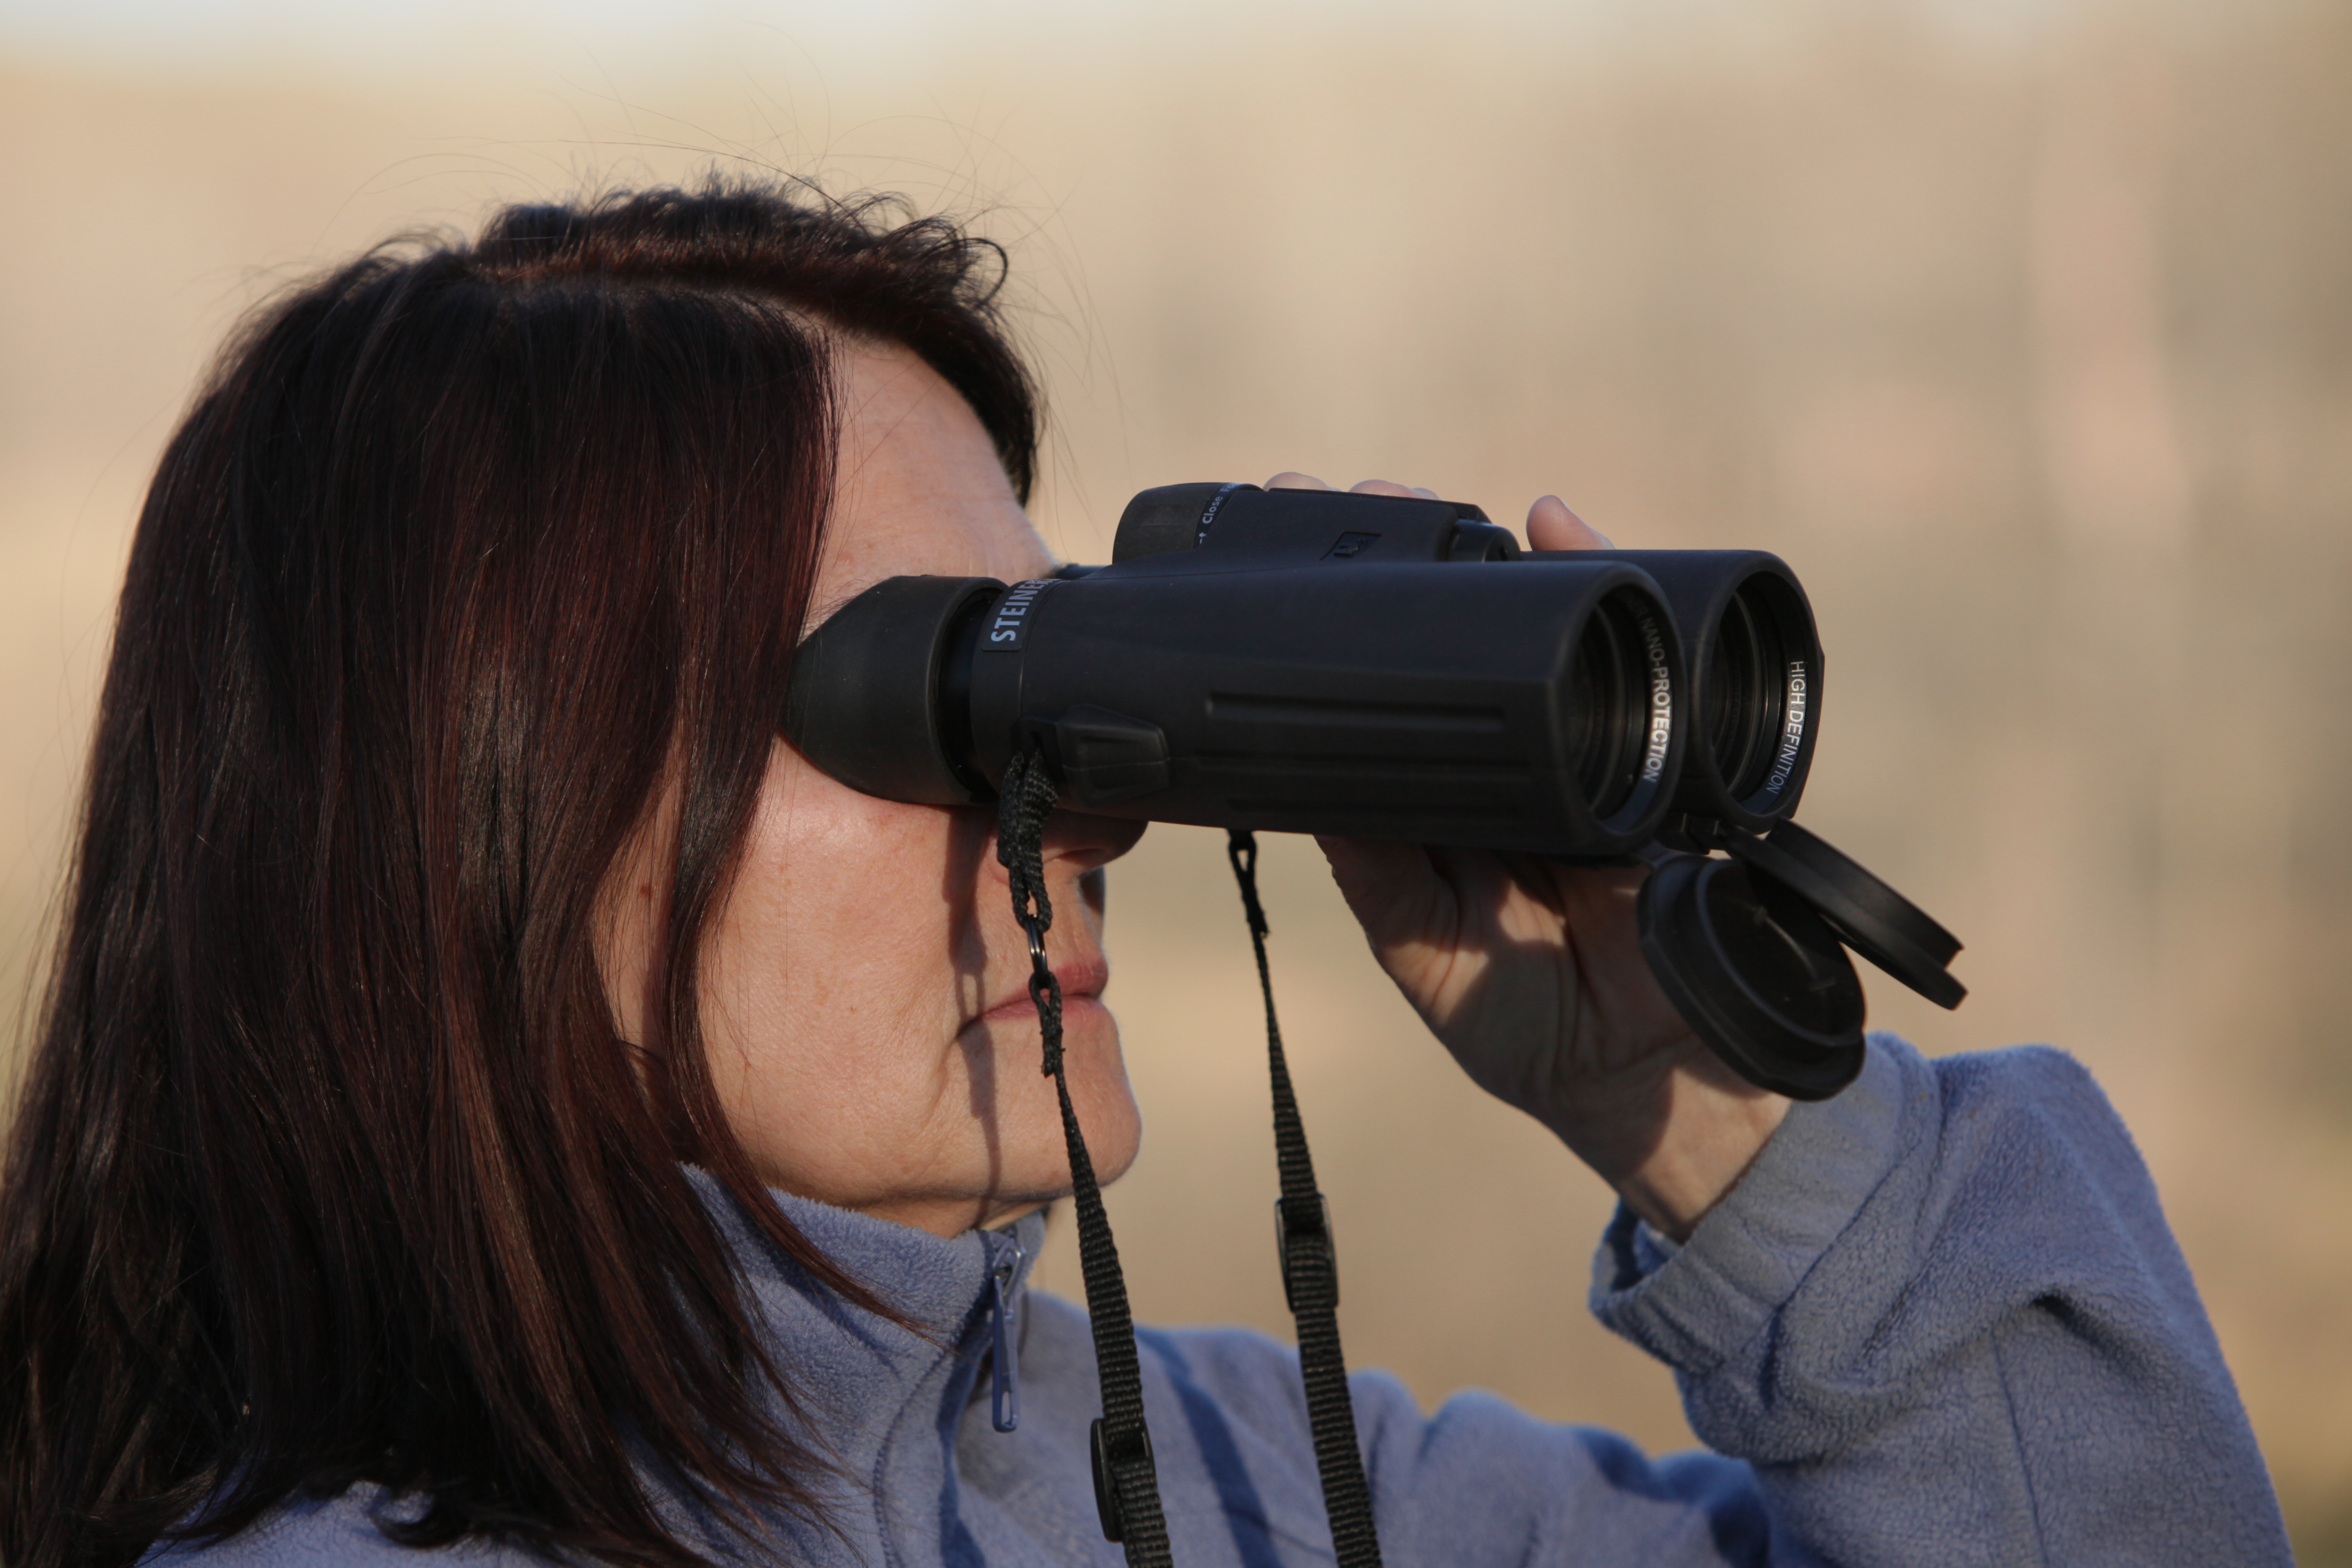 The Steiner HX binoculars have unusual, light blocking eyecups. 